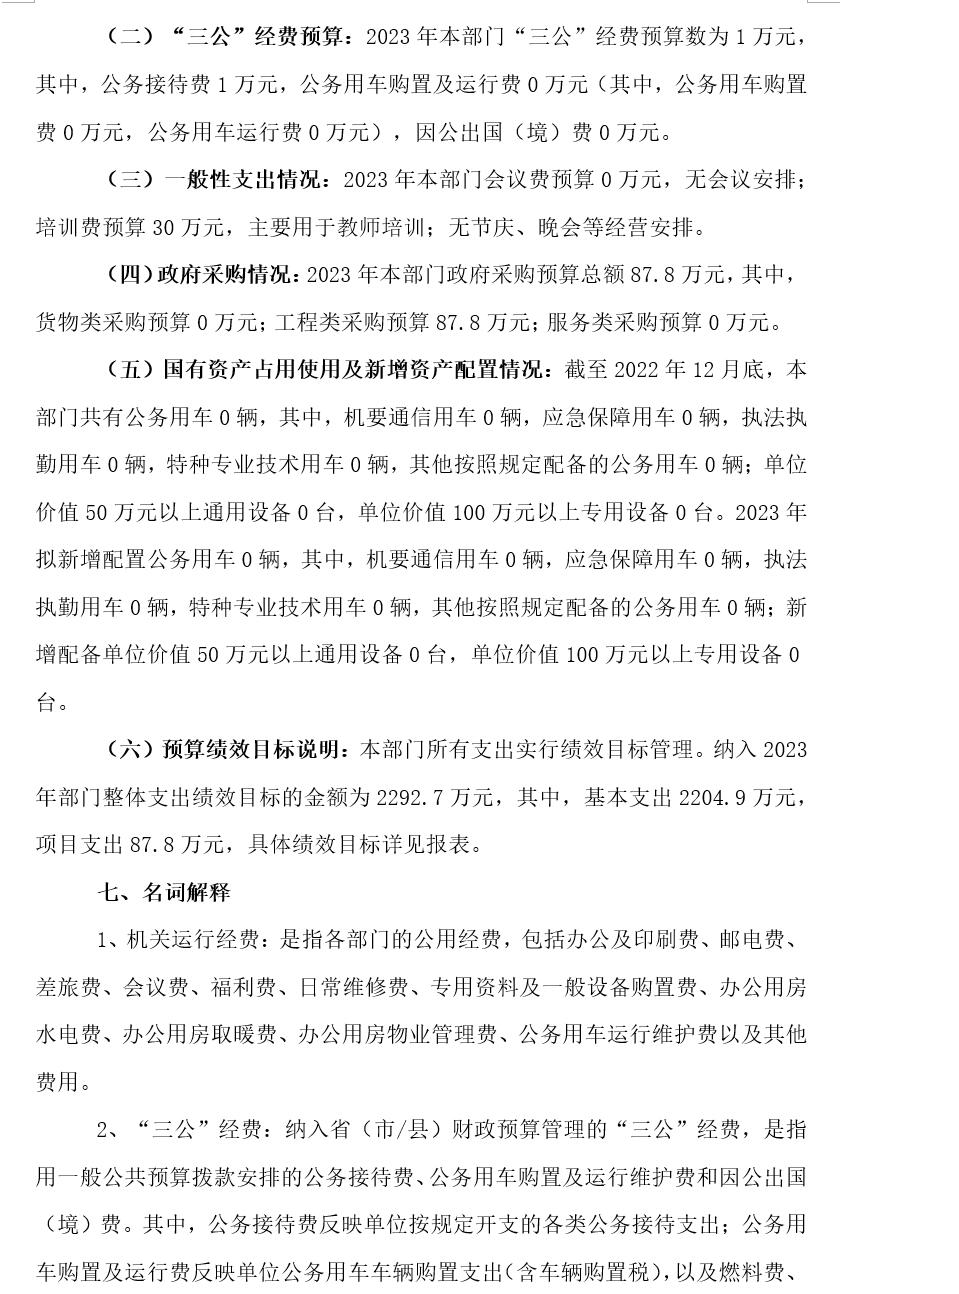 湘潭市益智中学2023年部门预算公开说明